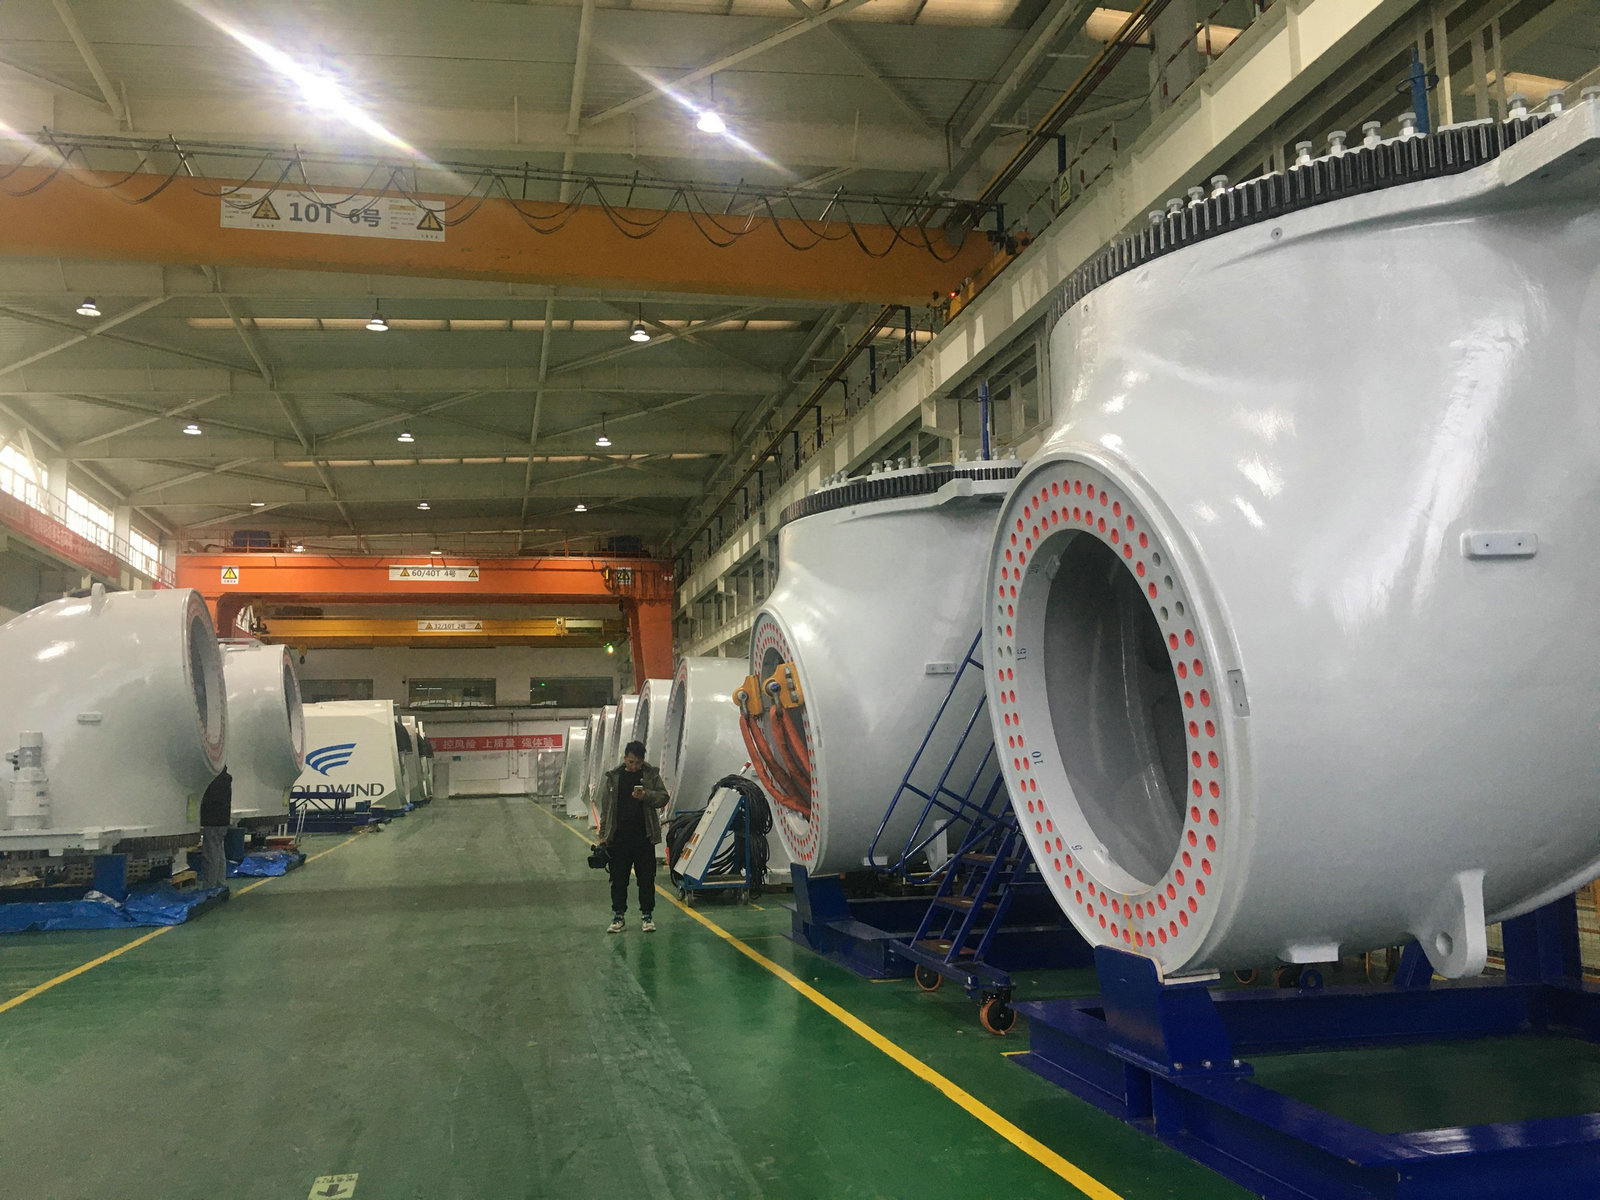 甘肃金风风电设备制造有限公司总装厂内待组装的机舱设备